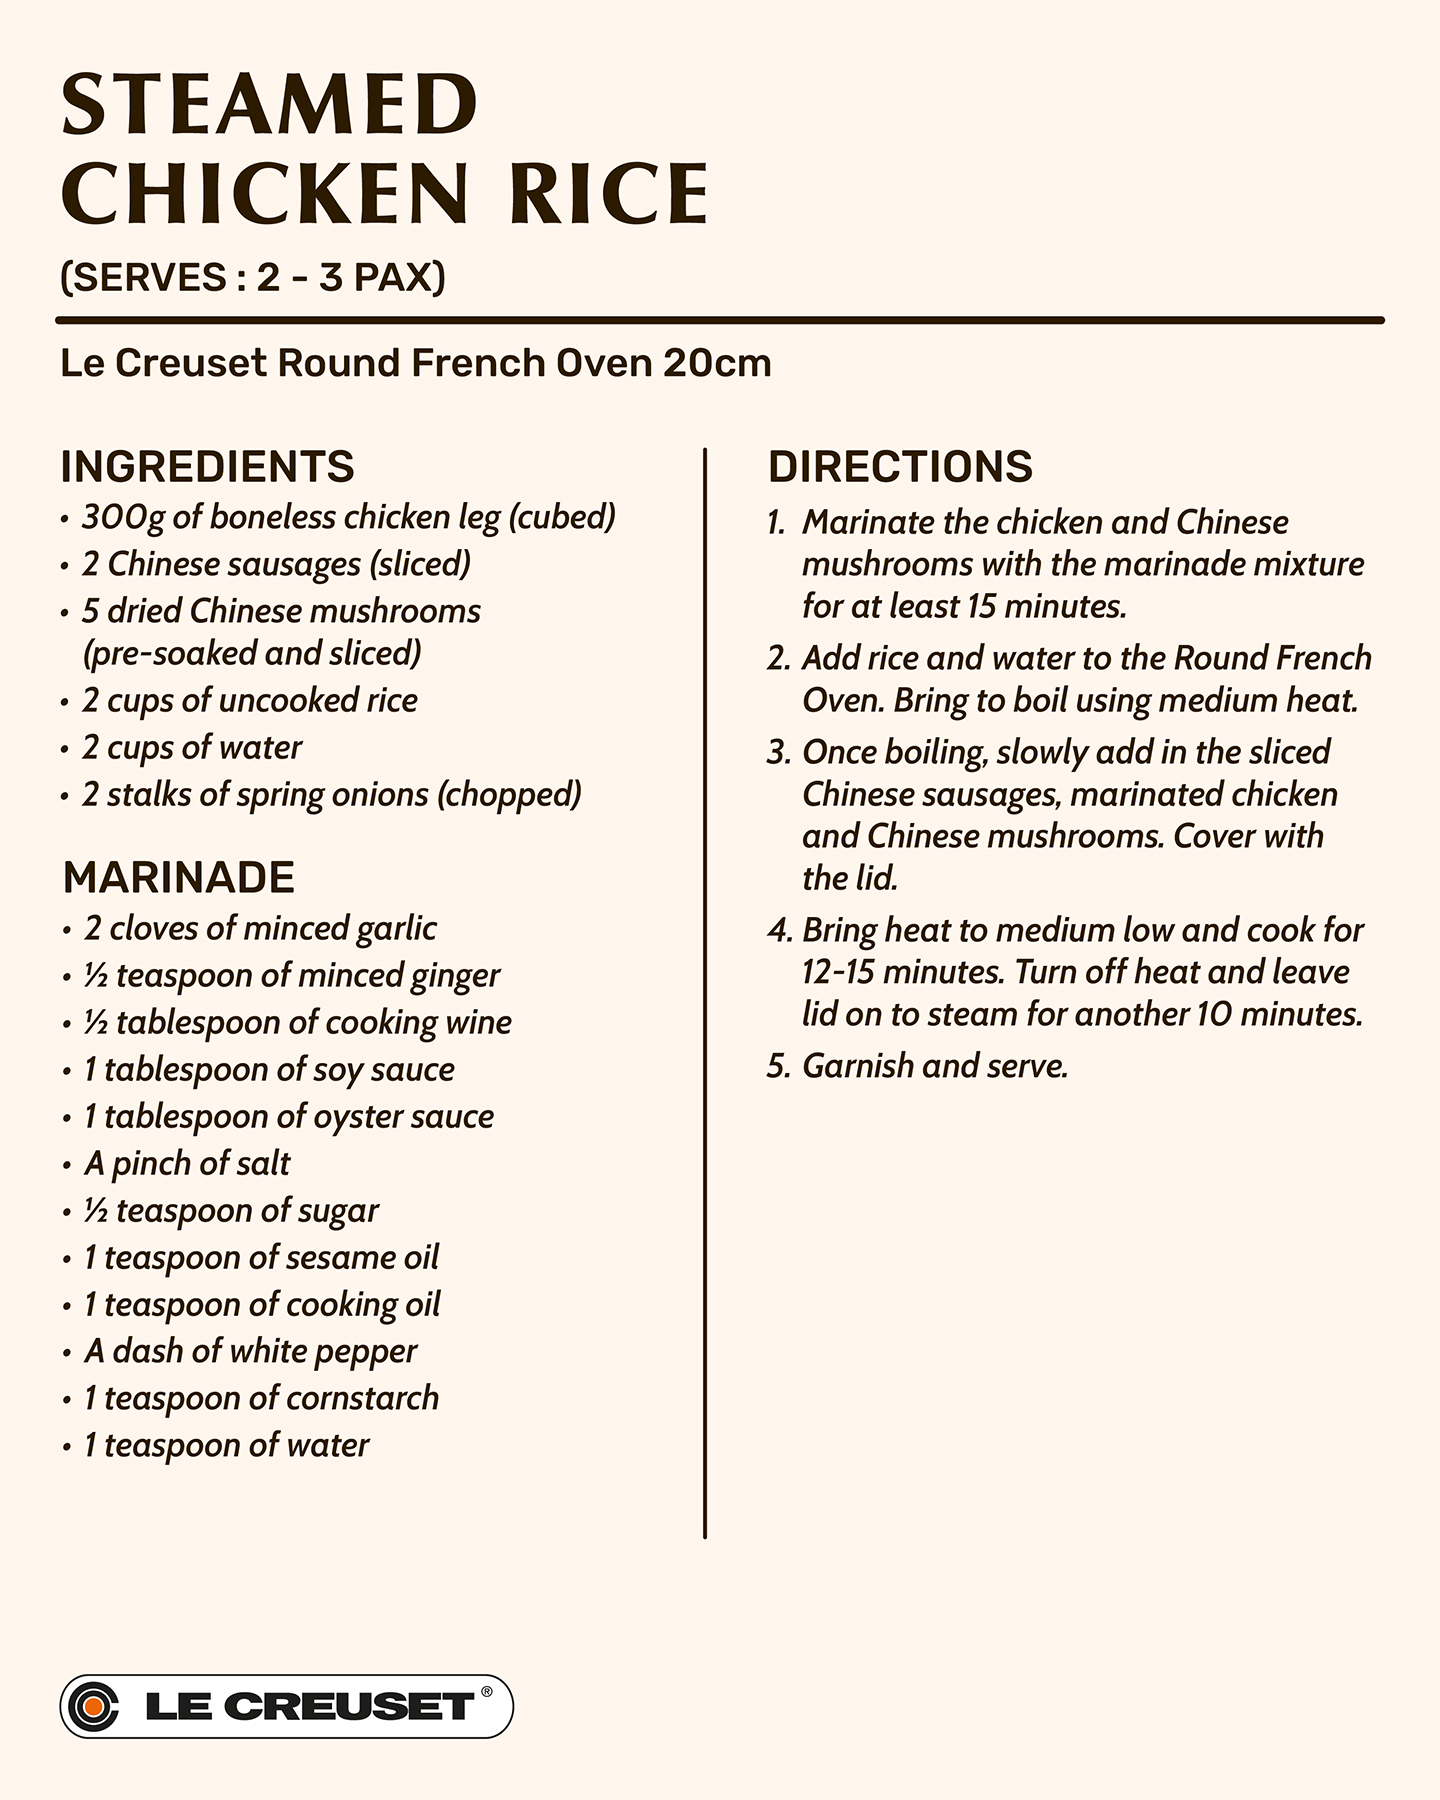 Steamed Chicken Rice